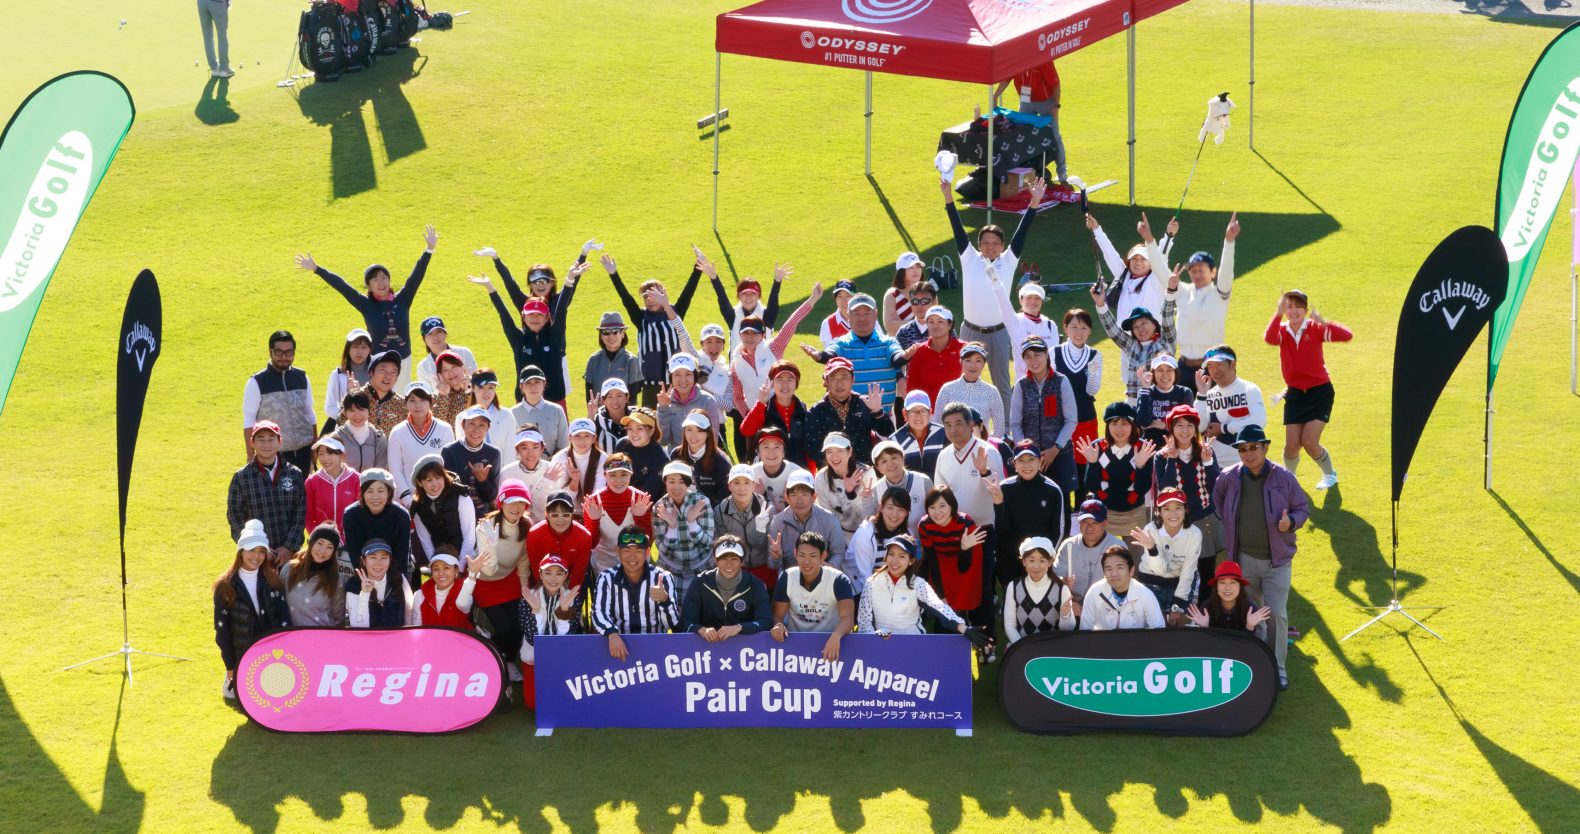 Victoria Golf × Callaway Apparel Pair Cup　スタート前の集合写真